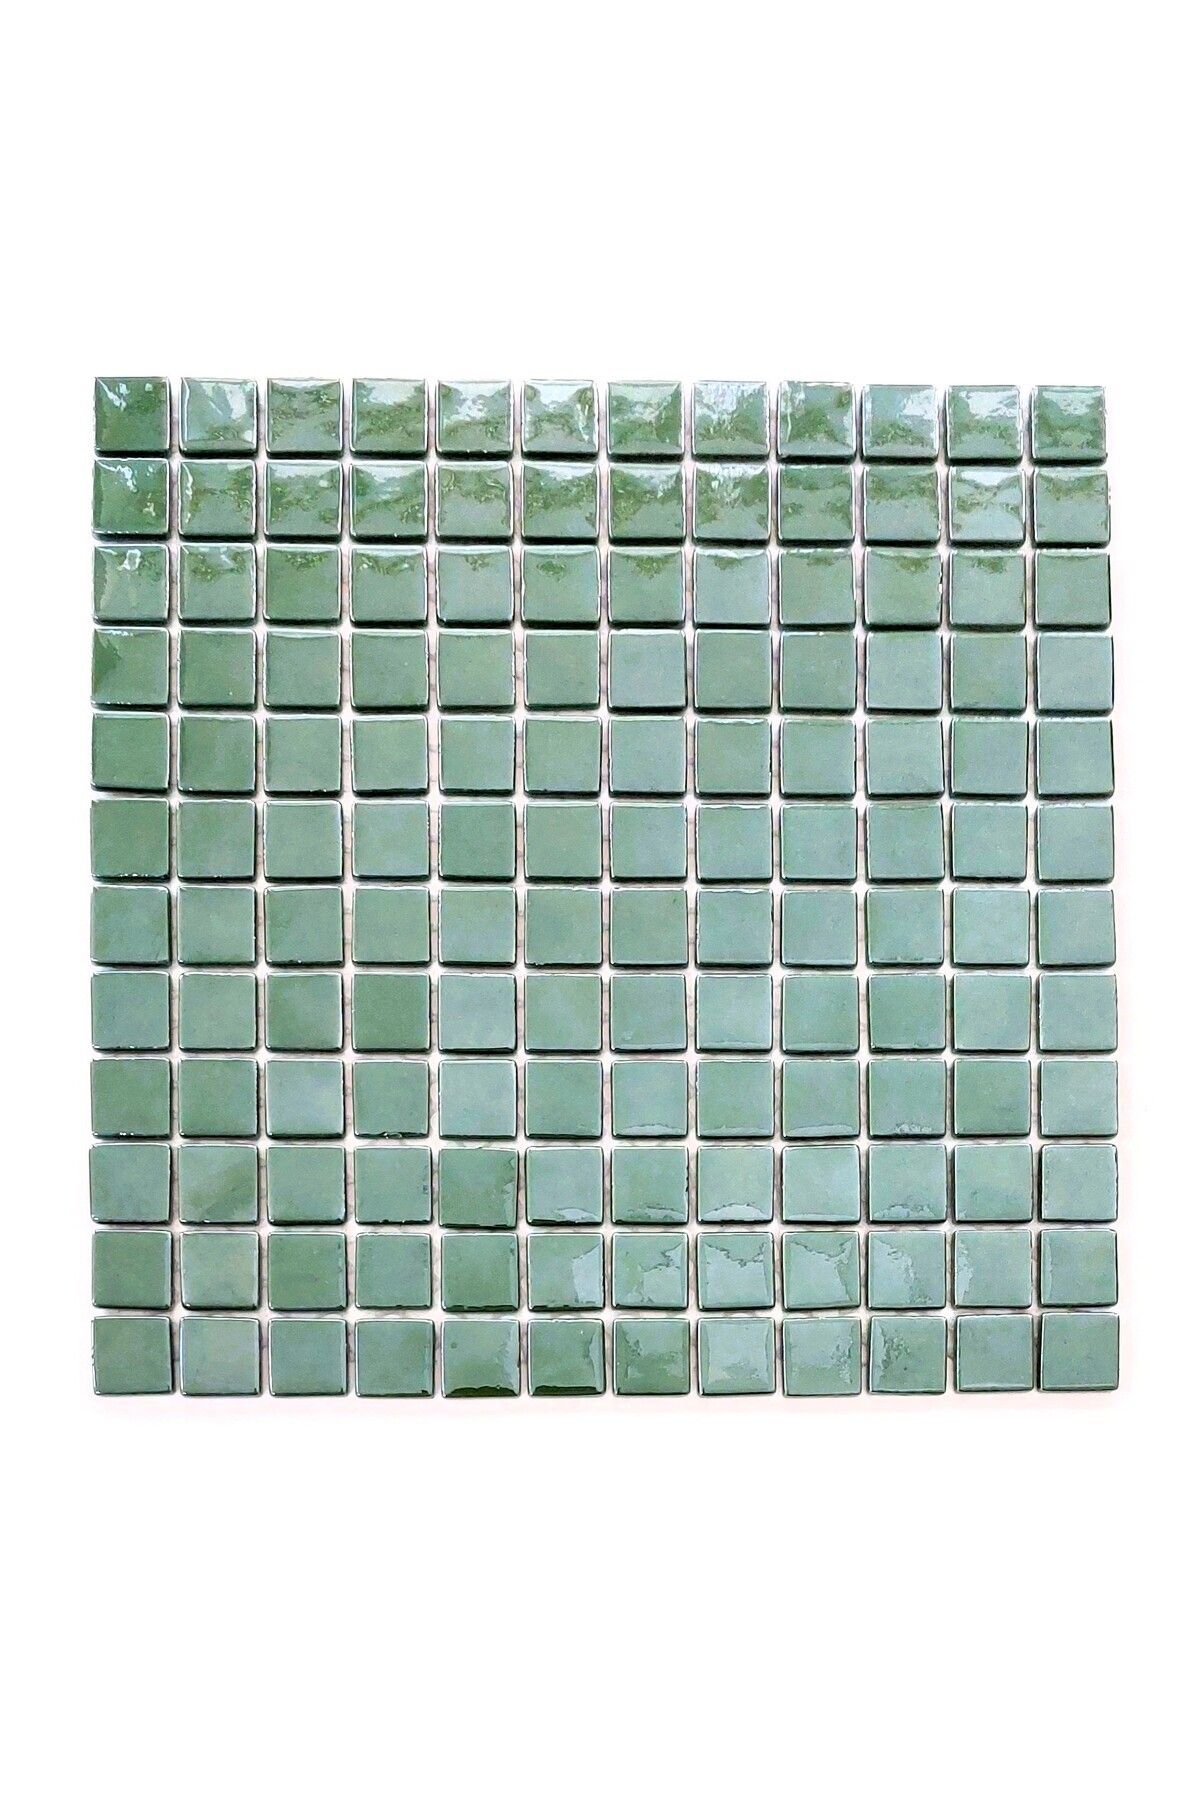 MozaiKristaL Yaşam Alanlarının Tüm Yüzeyleri Için Yeşil Cam Mozaik ( 1 Koli = 10 File Karo = 1 M2 Fiyatıdır )